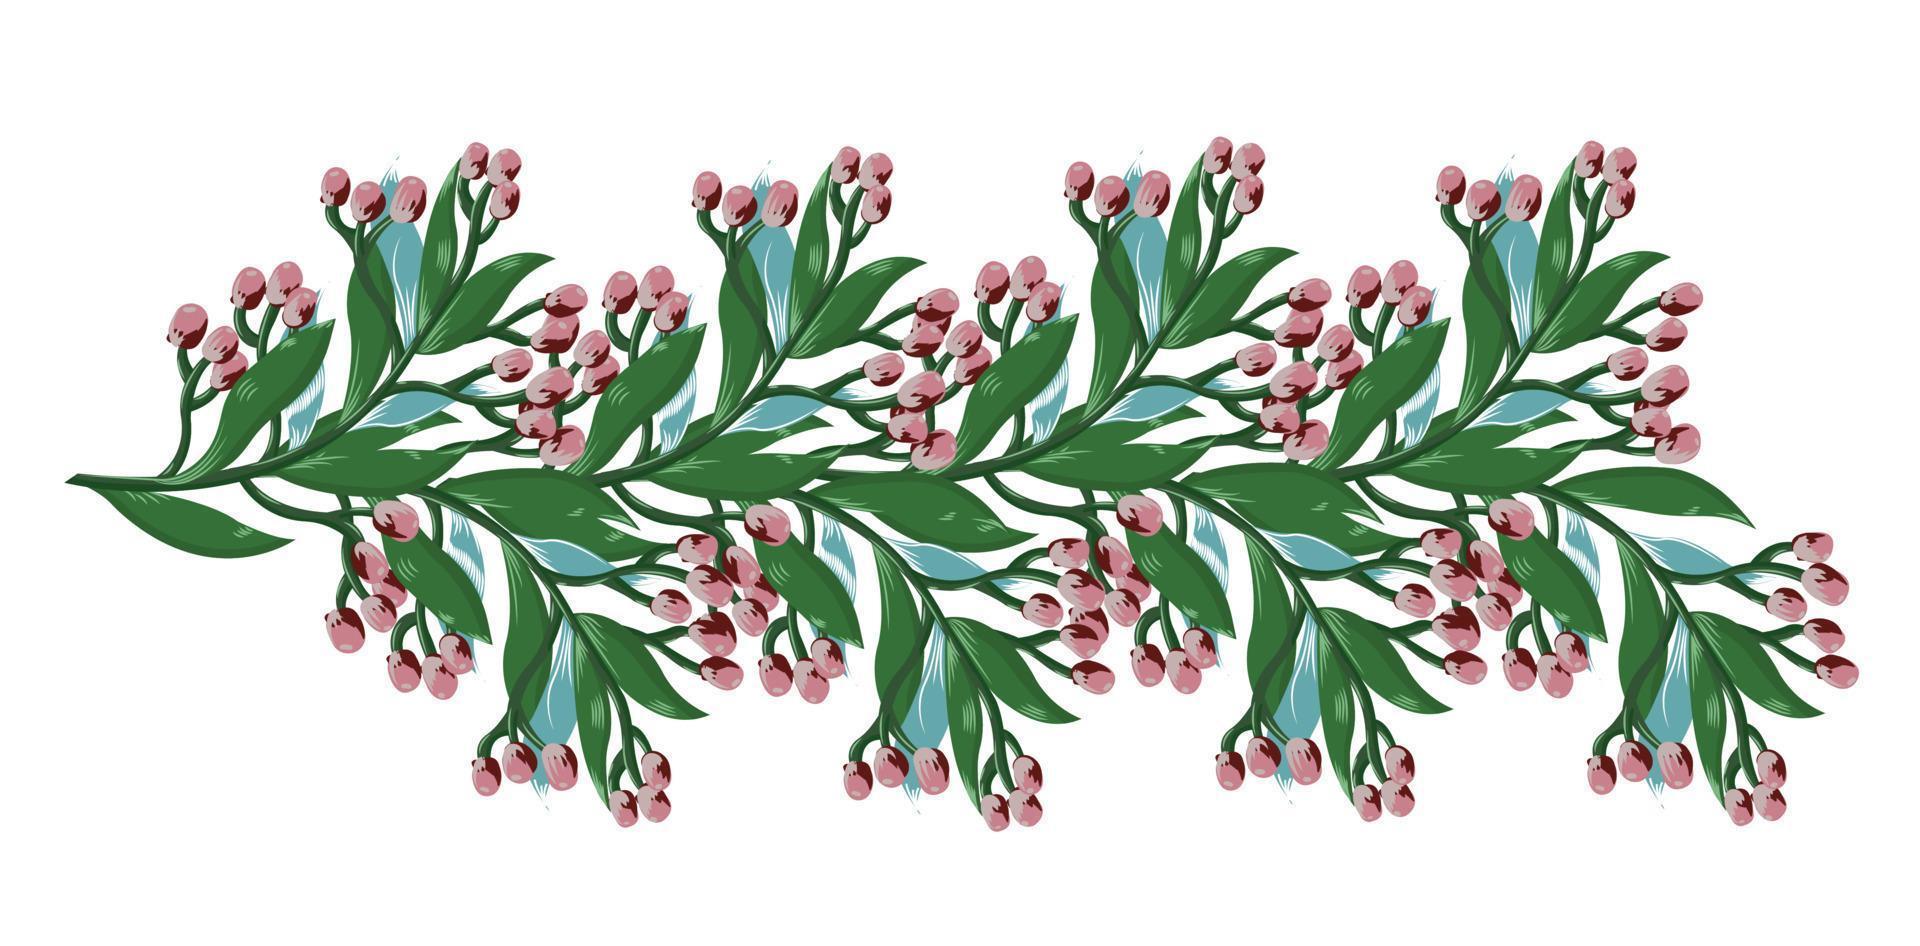 kvist med rosa blommor, gröna och blå löv för semestern, bröllopet, födelsedagen. horisontellt element för design. vektor stock illustration isolerad på vit bakgrund.